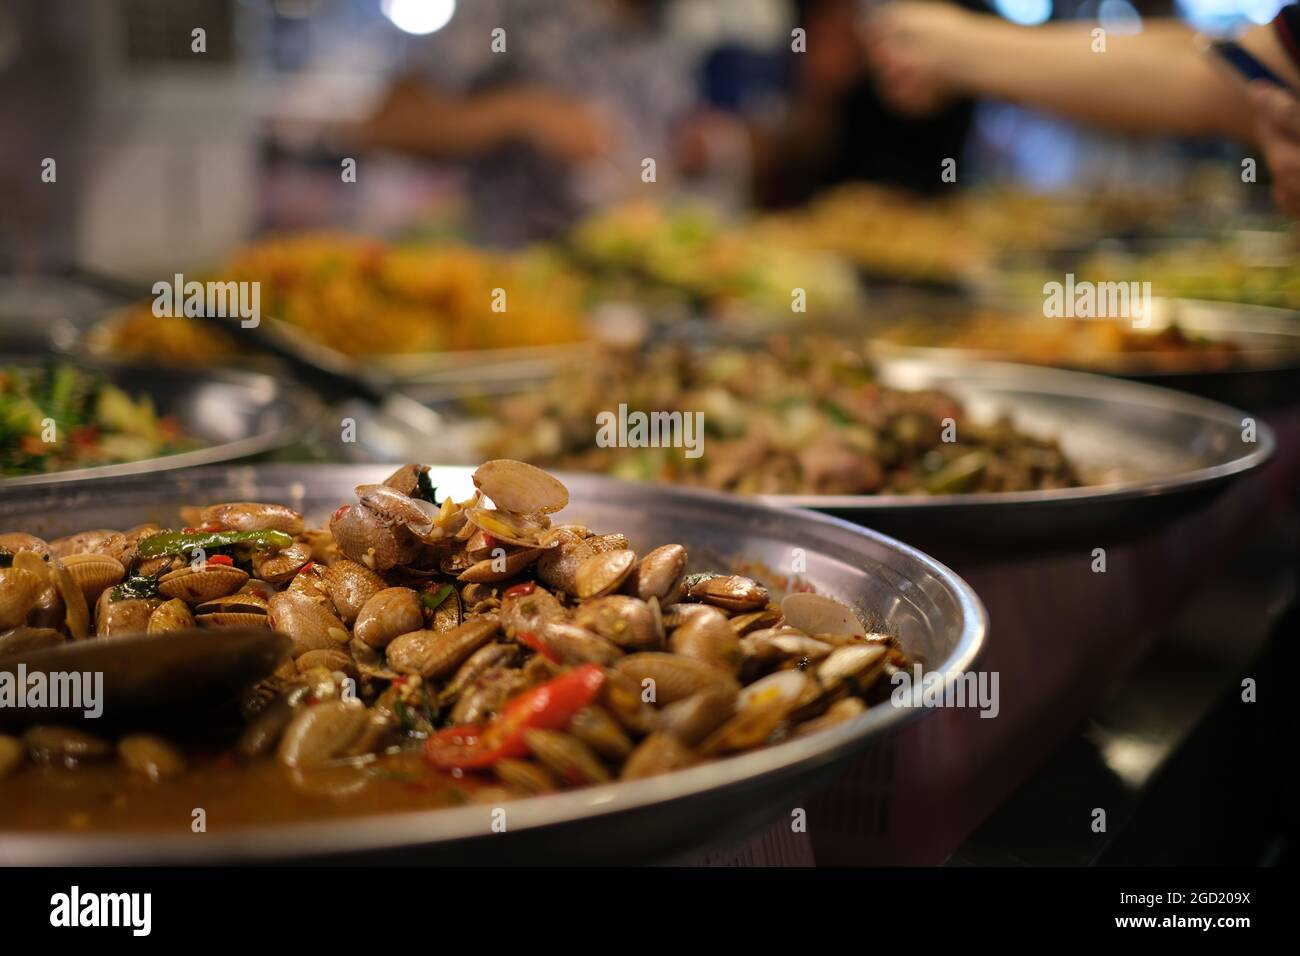 Visita al mercado nocturno en Tailandia: Un puesto de comida con platos de metal llenos de conchas fritas con especias, y otras comidas tradicionales tailandesas Foto de stock